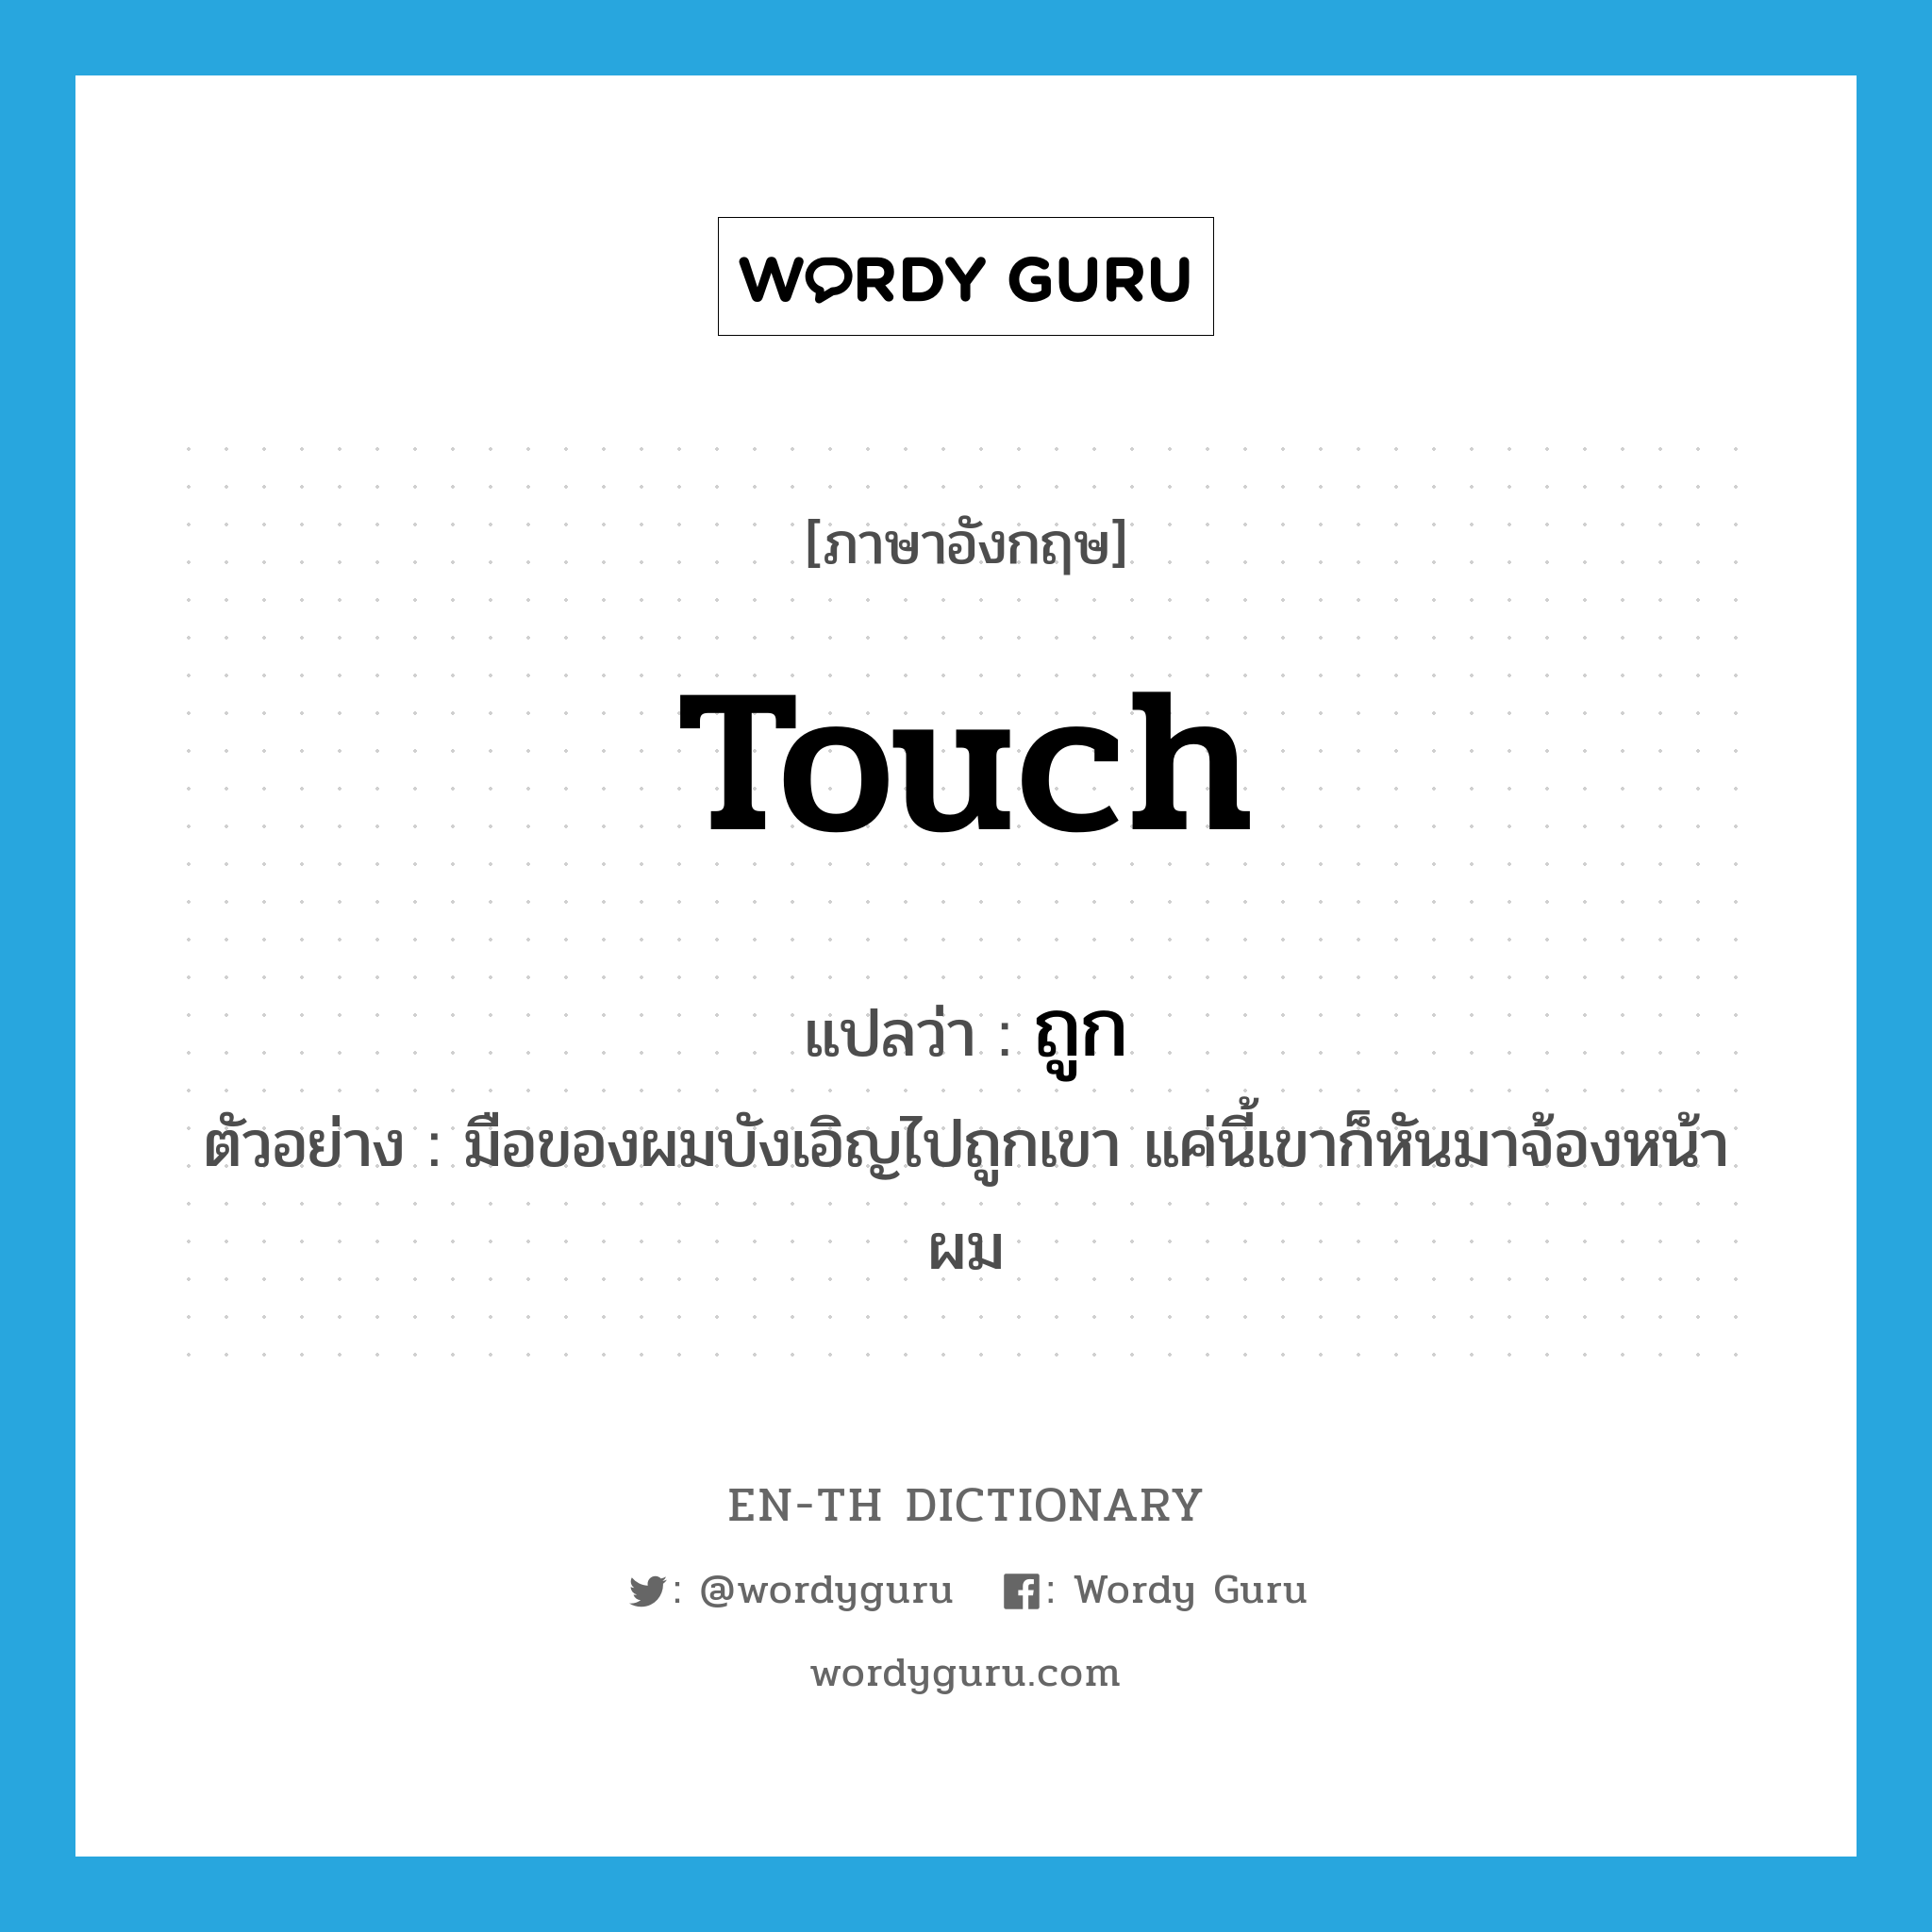 touch แปลว่า?, คำศัพท์ภาษาอังกฤษ touch แปลว่า ถูก ประเภท V ตัวอย่าง มือของผมบังเอิญไปถูกเขา แค่นี้เขาก็หันมาจ้องหน้าผม หมวด V